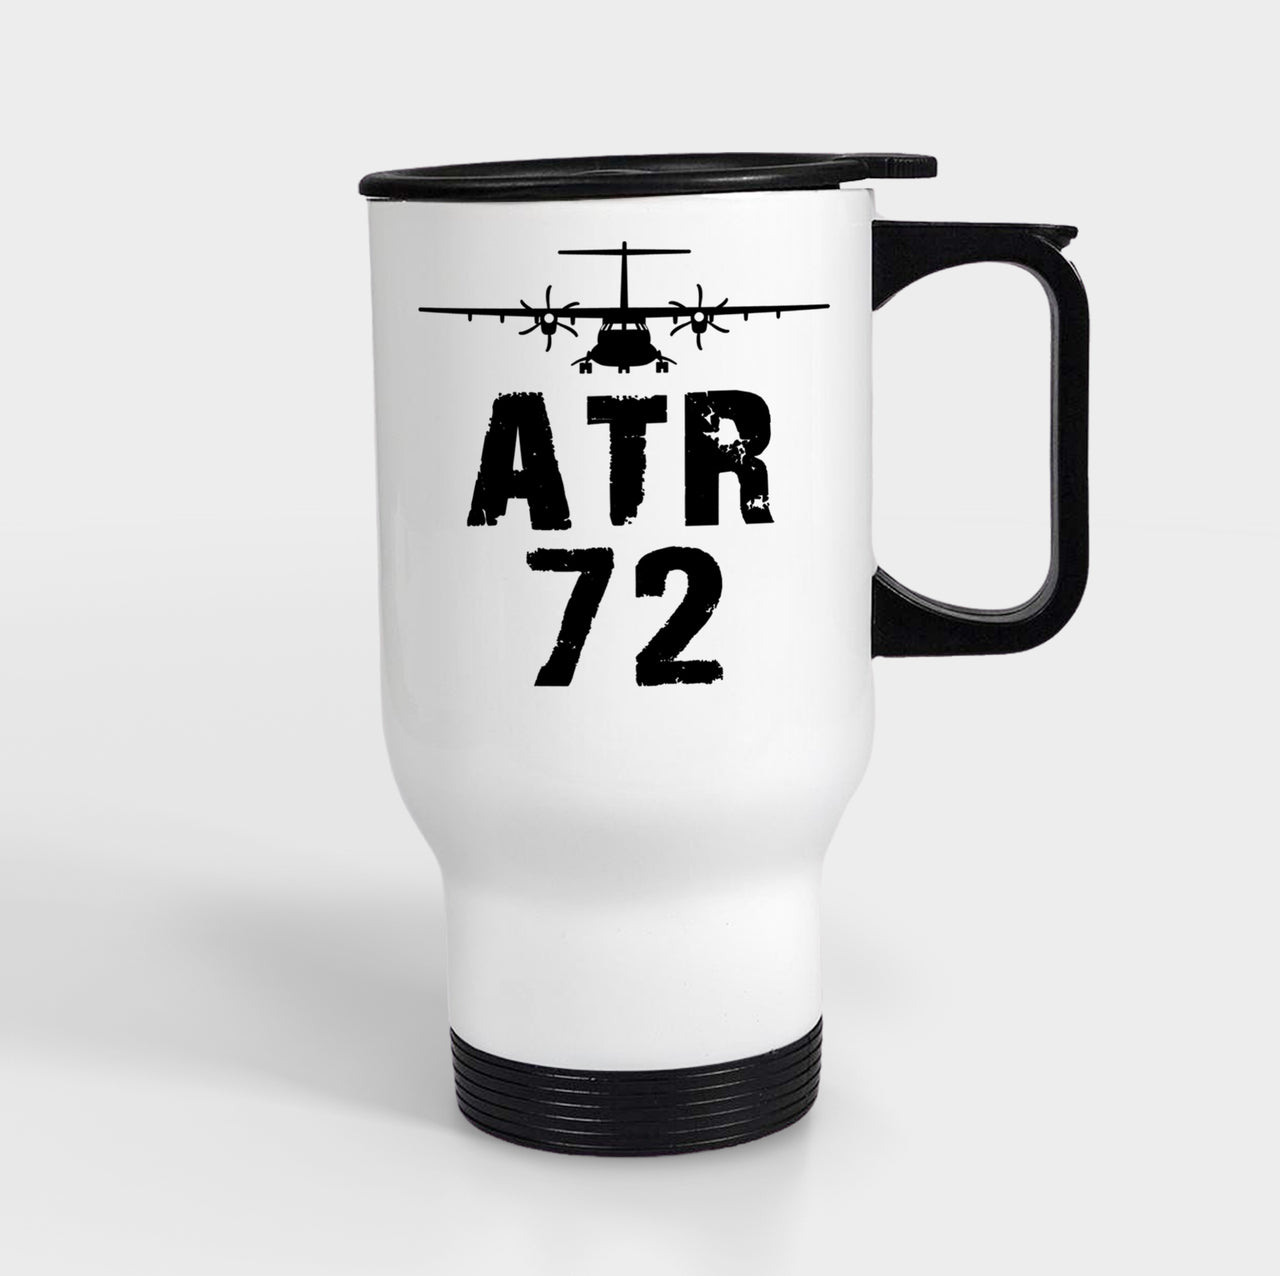 ATR-72 & Plane Designed Travel Mugs (With Holder)